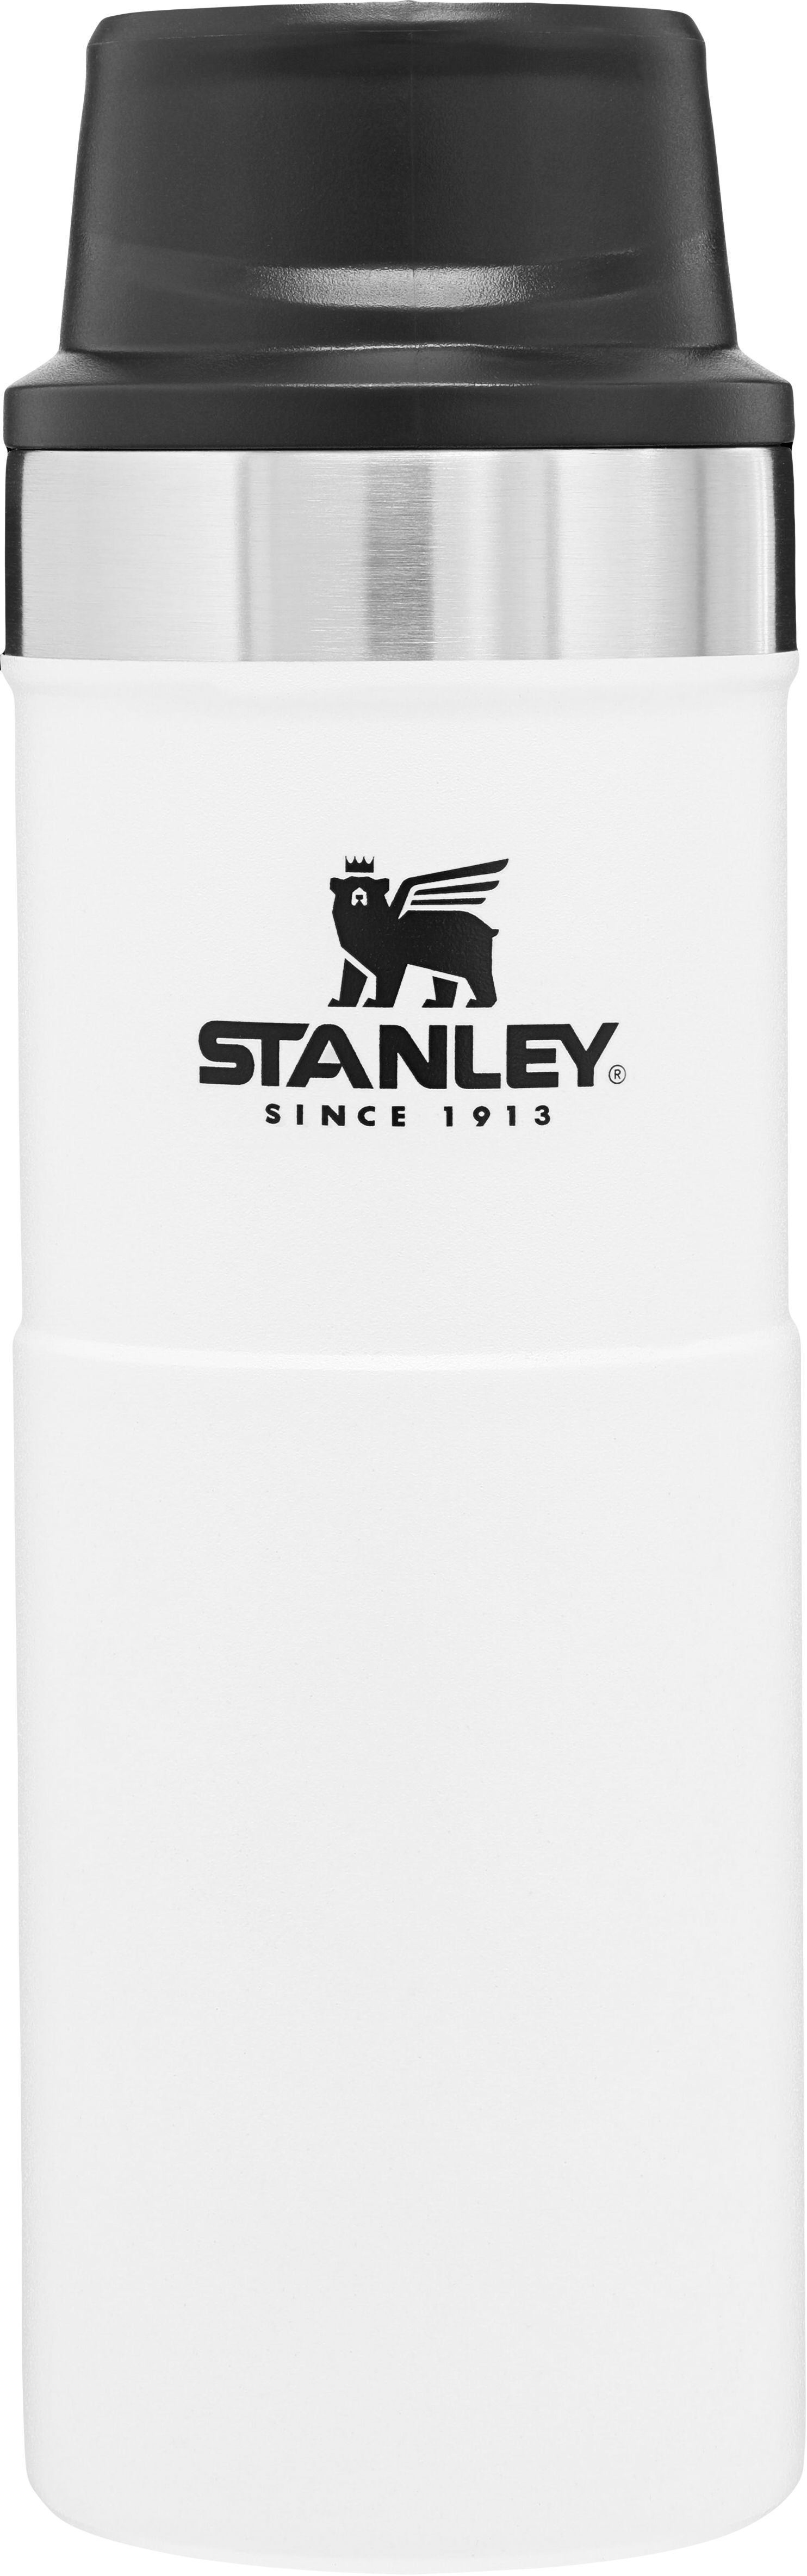 Stanley Trigger Action Travel Mug 16 oz., Best Sellers